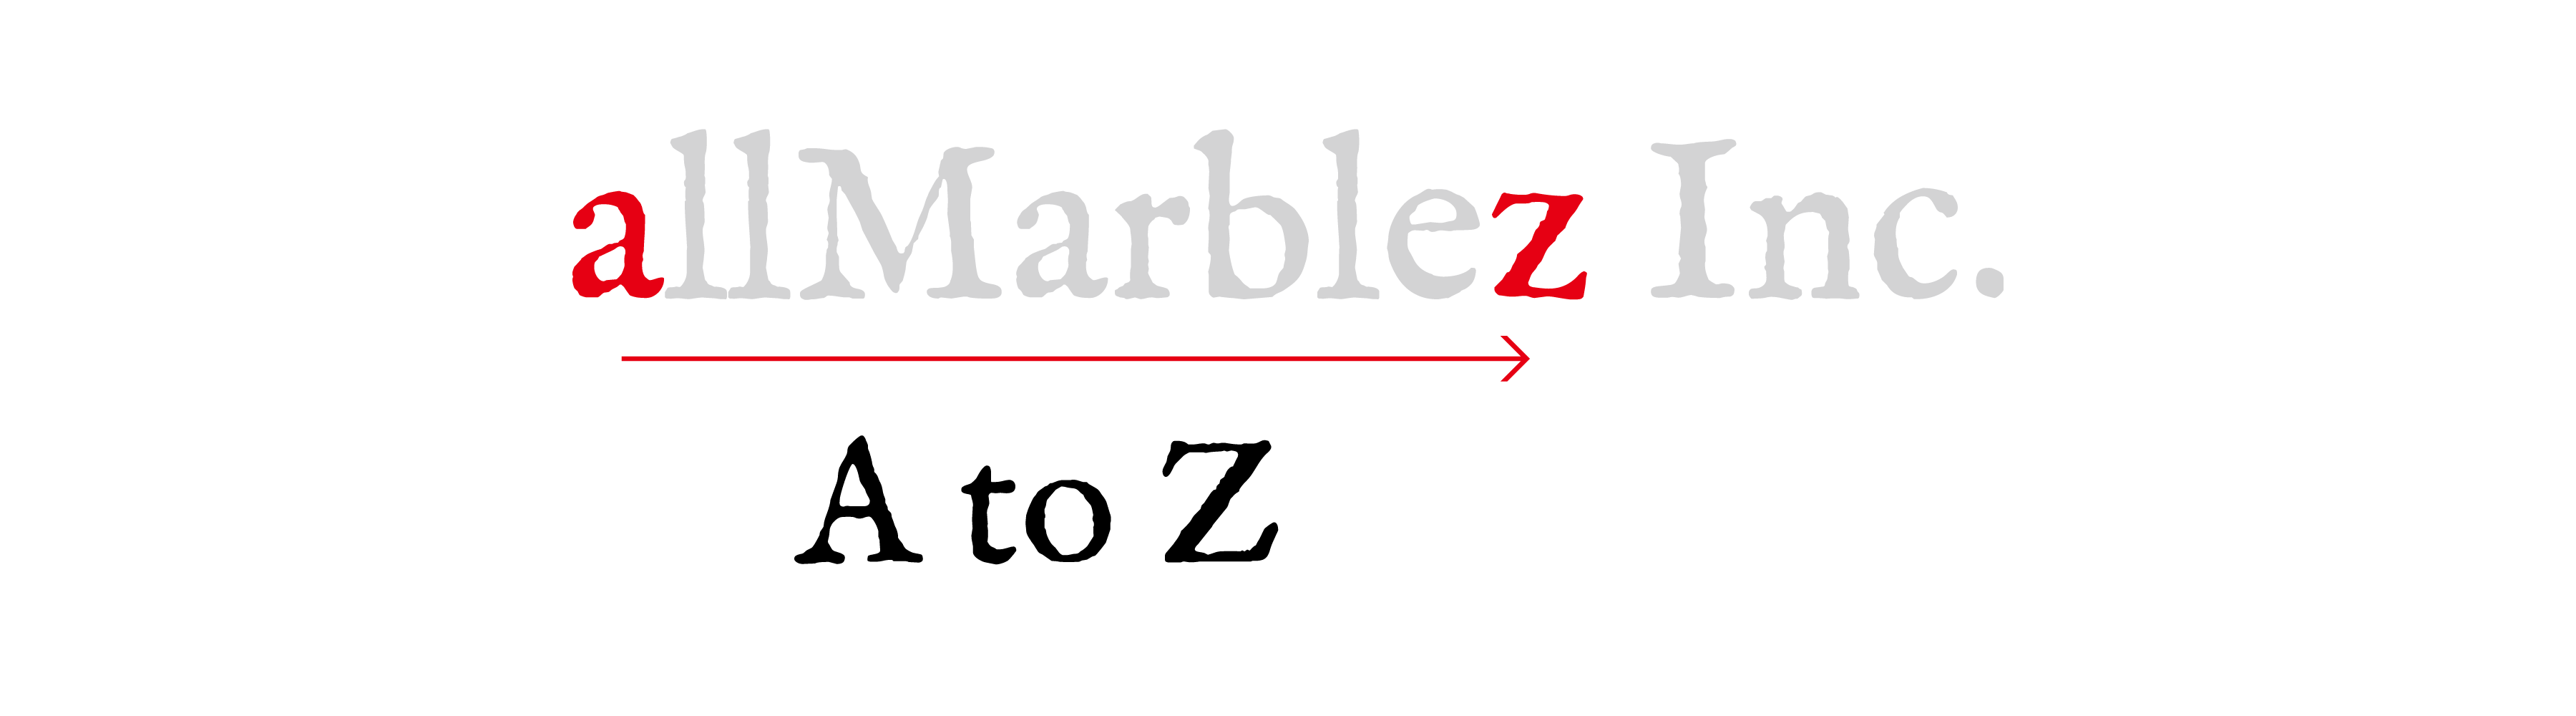 「allMarblez」=A to Z